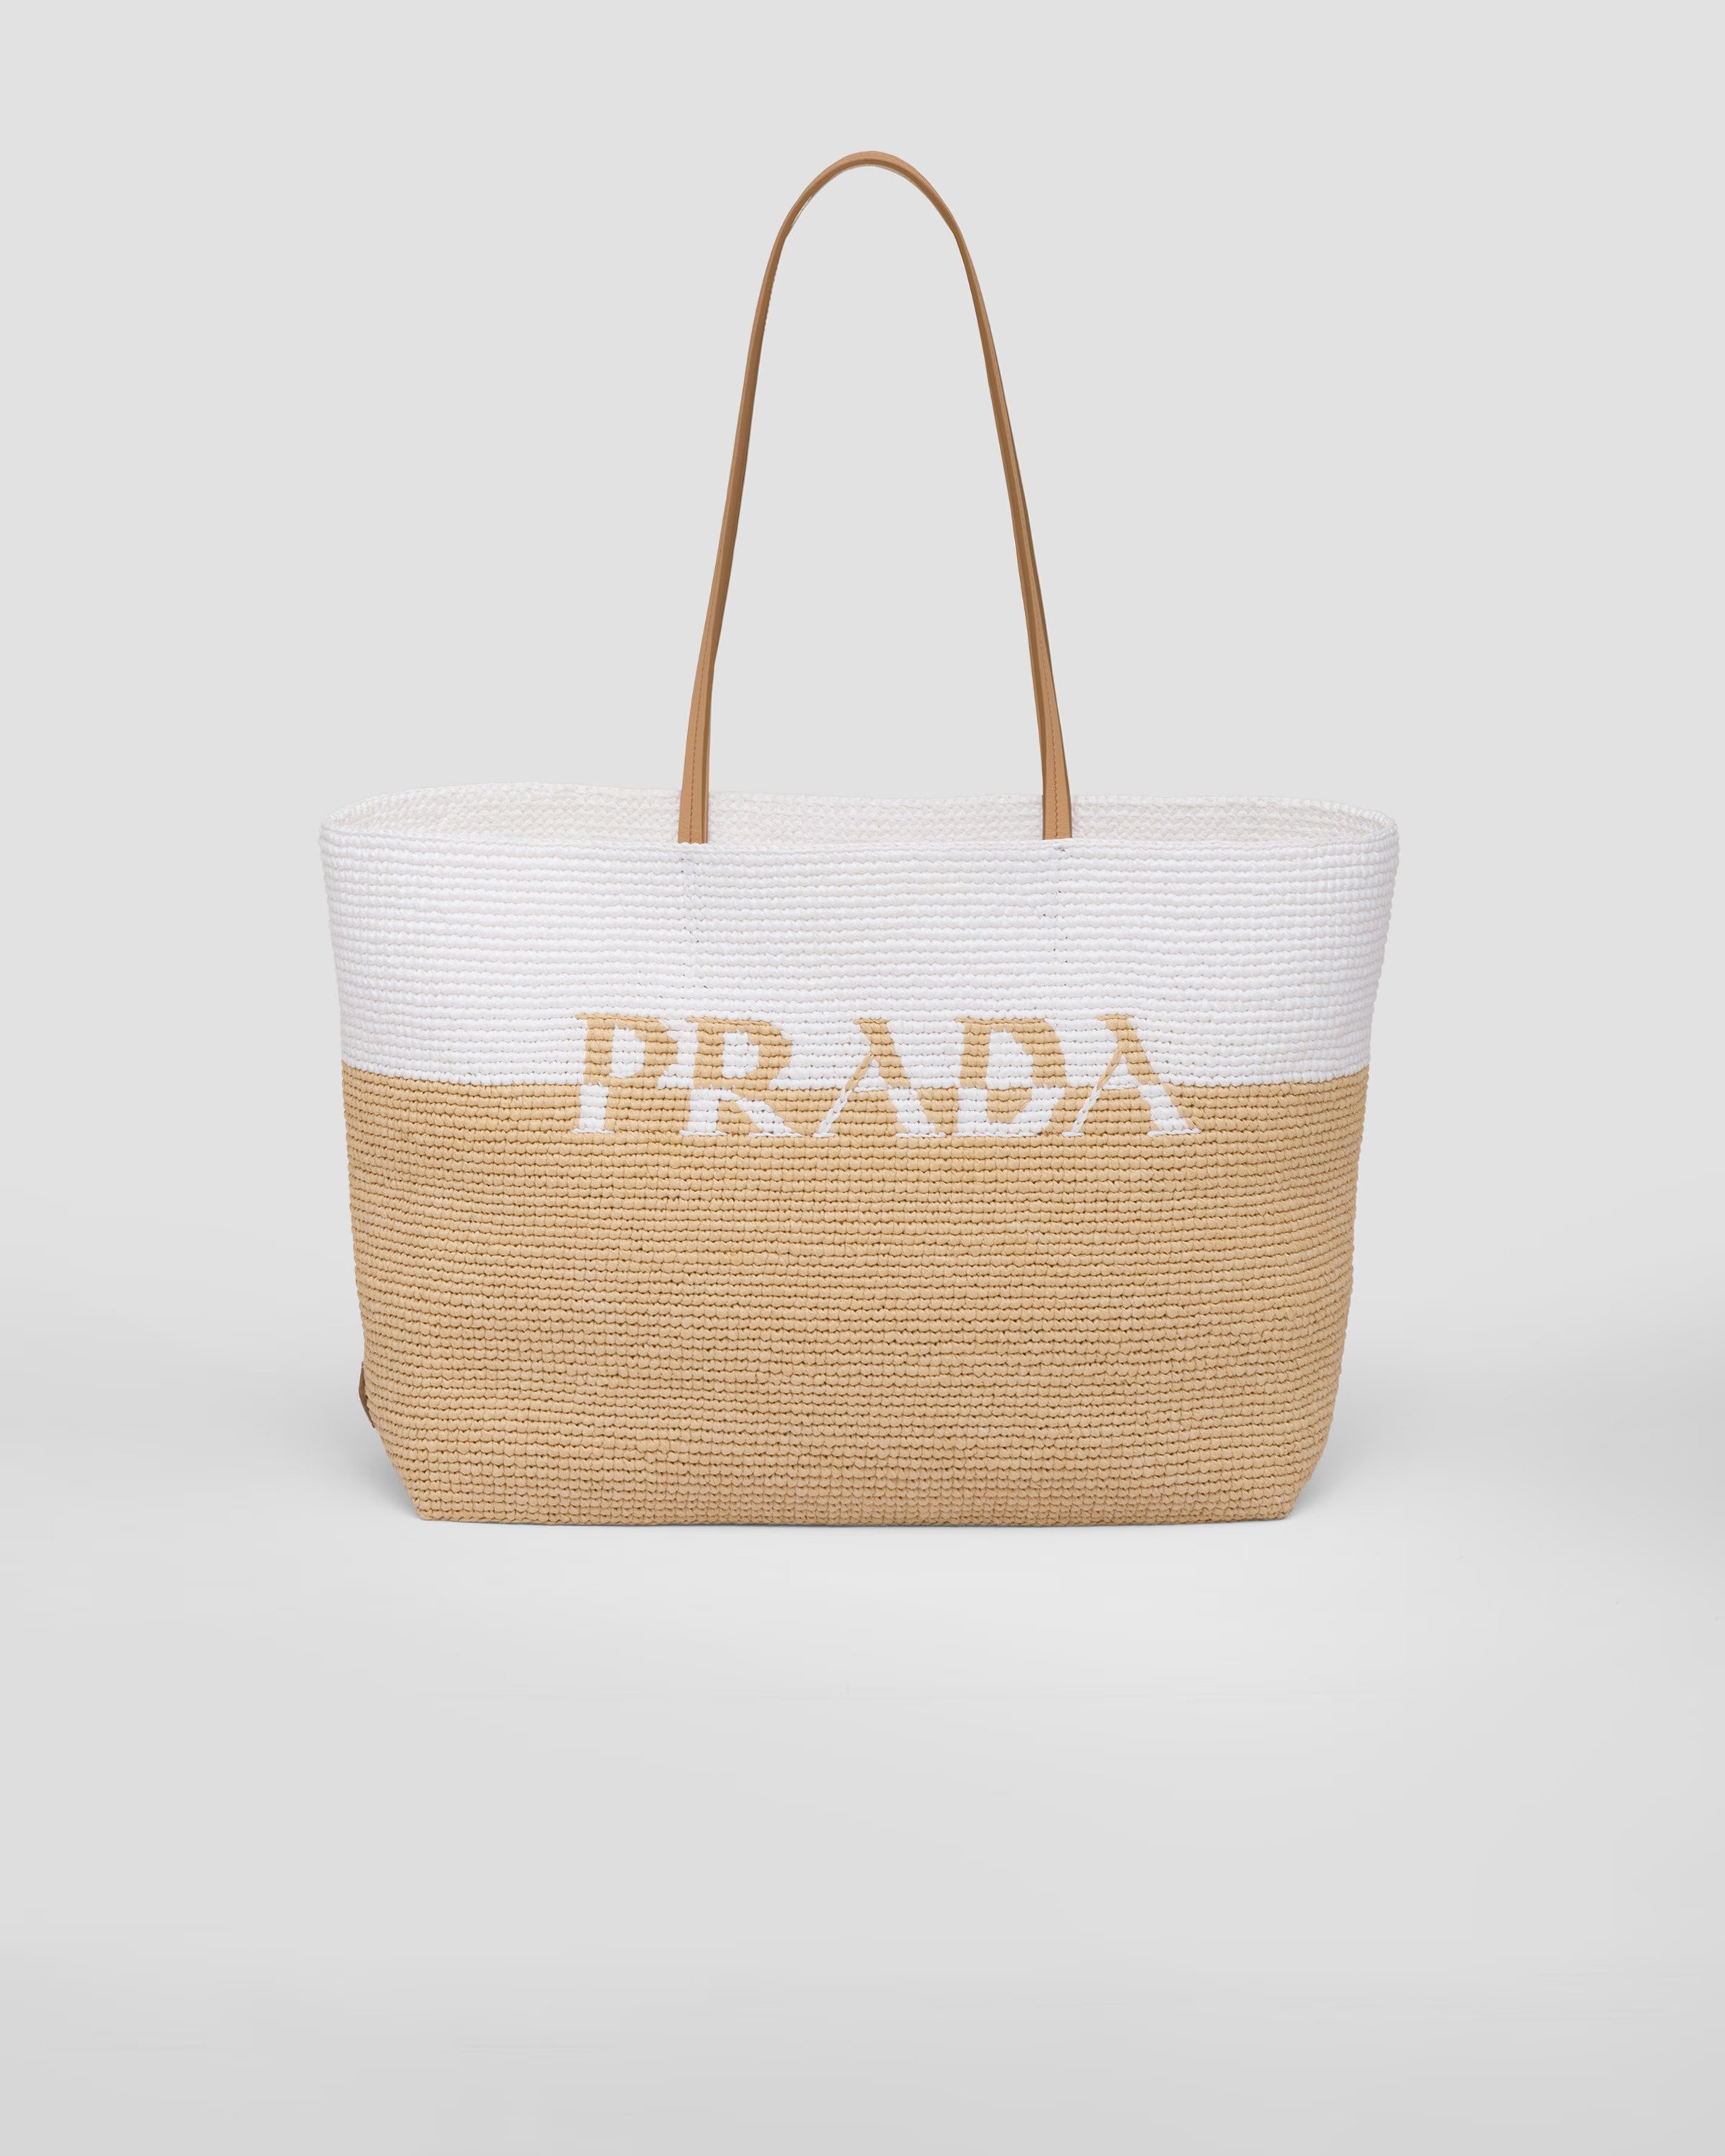 Prada + Raffia and Leather Tote Bag